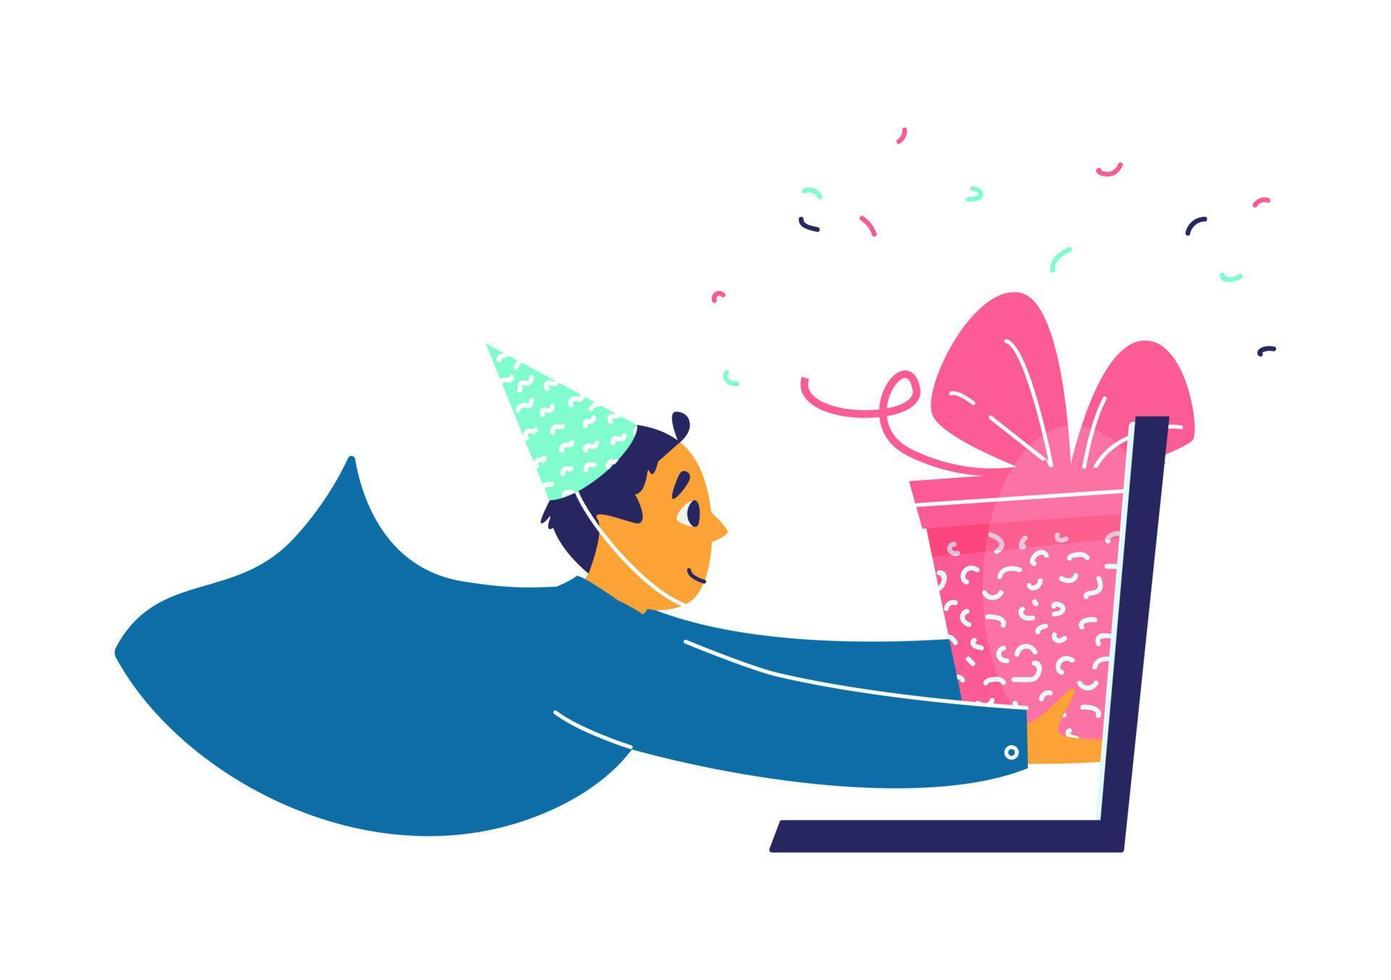 jong Mens in verjaardag hoed duurt Cadeau doos uit van laptop. ver weg viering partij concept. vlak vector illustratie.